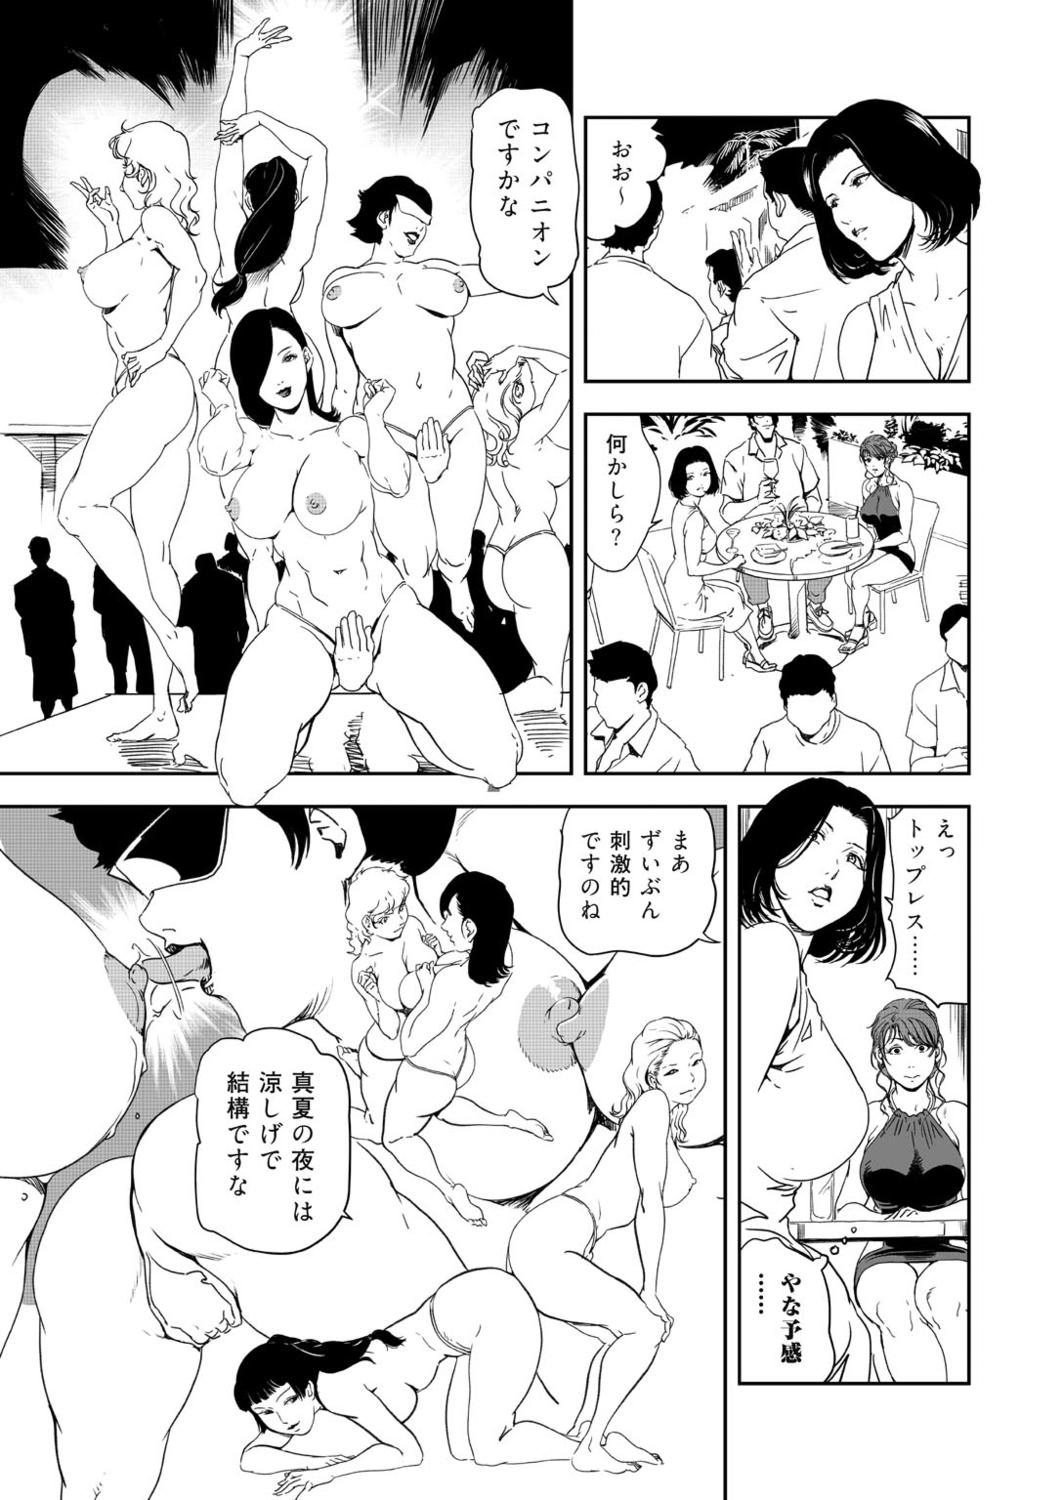 Beard Nikuhisyo Yukiko 41 Moneytalks - Page 11